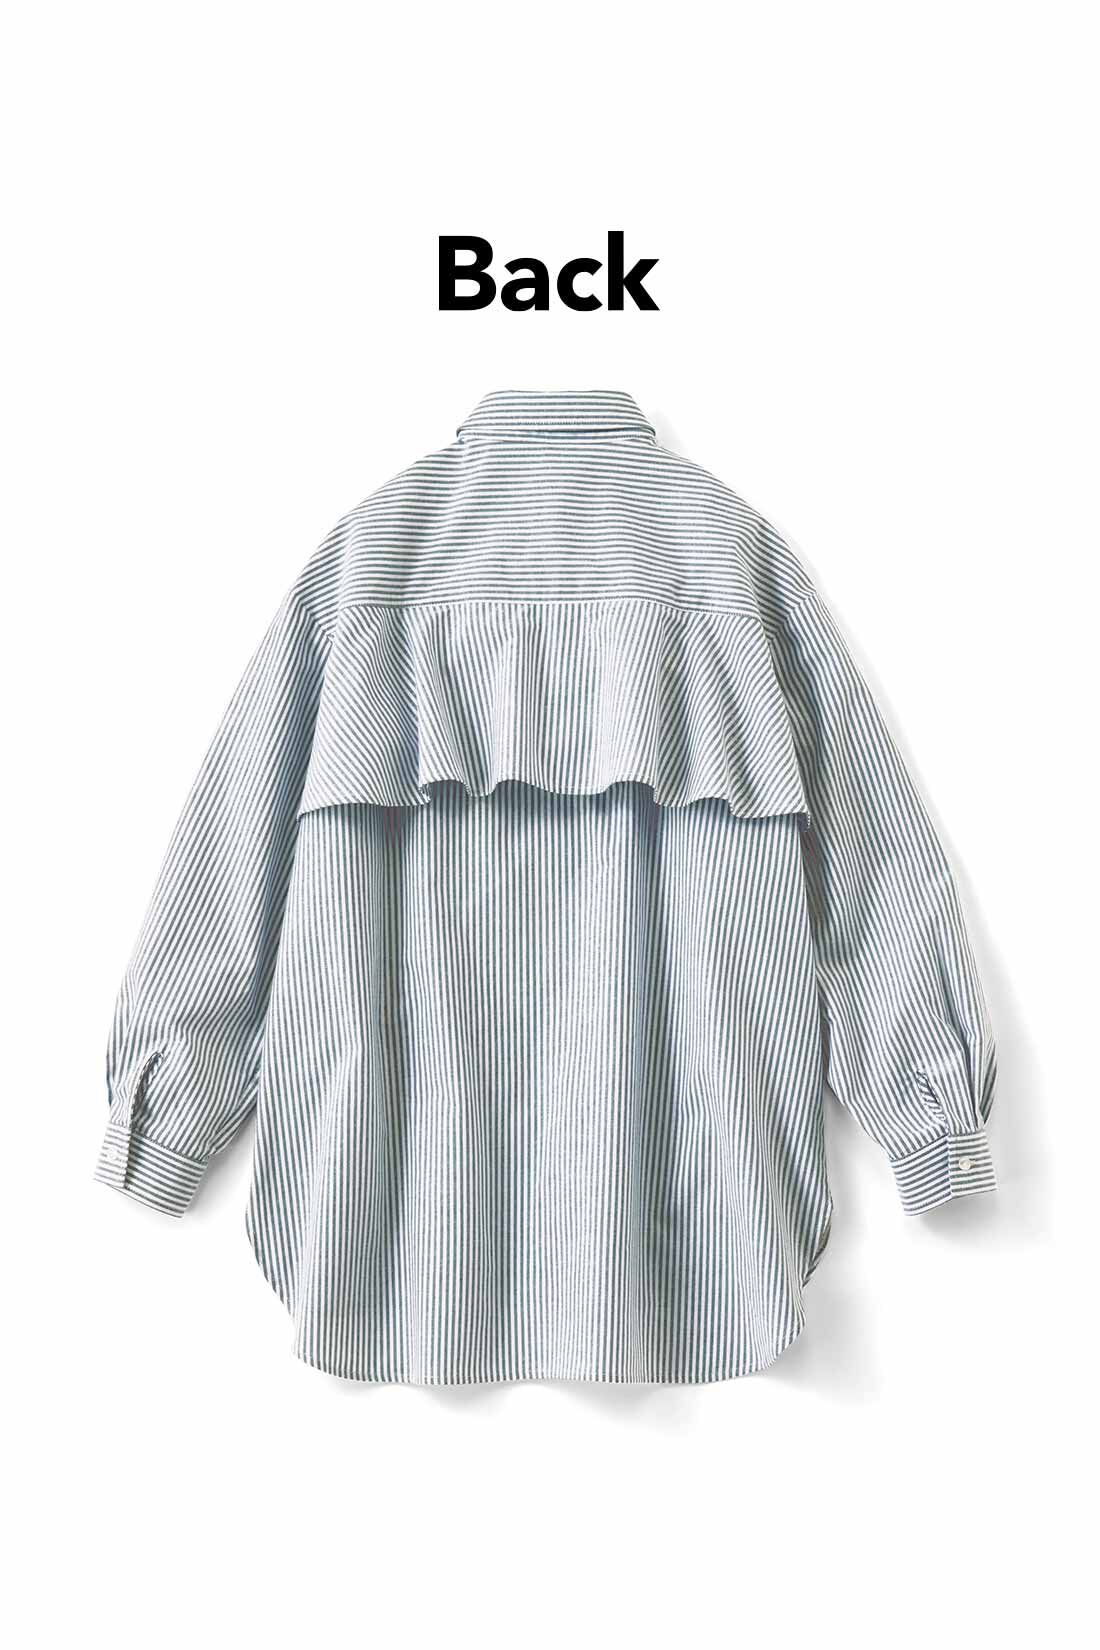 IEDIT|IEDIT[イディット]　バックフレアーデザインがきいた オックスフォード素材のこなれ見えシャツ〈グレー〉|バックフレアーで後ろ姿に女らしさをプラス。